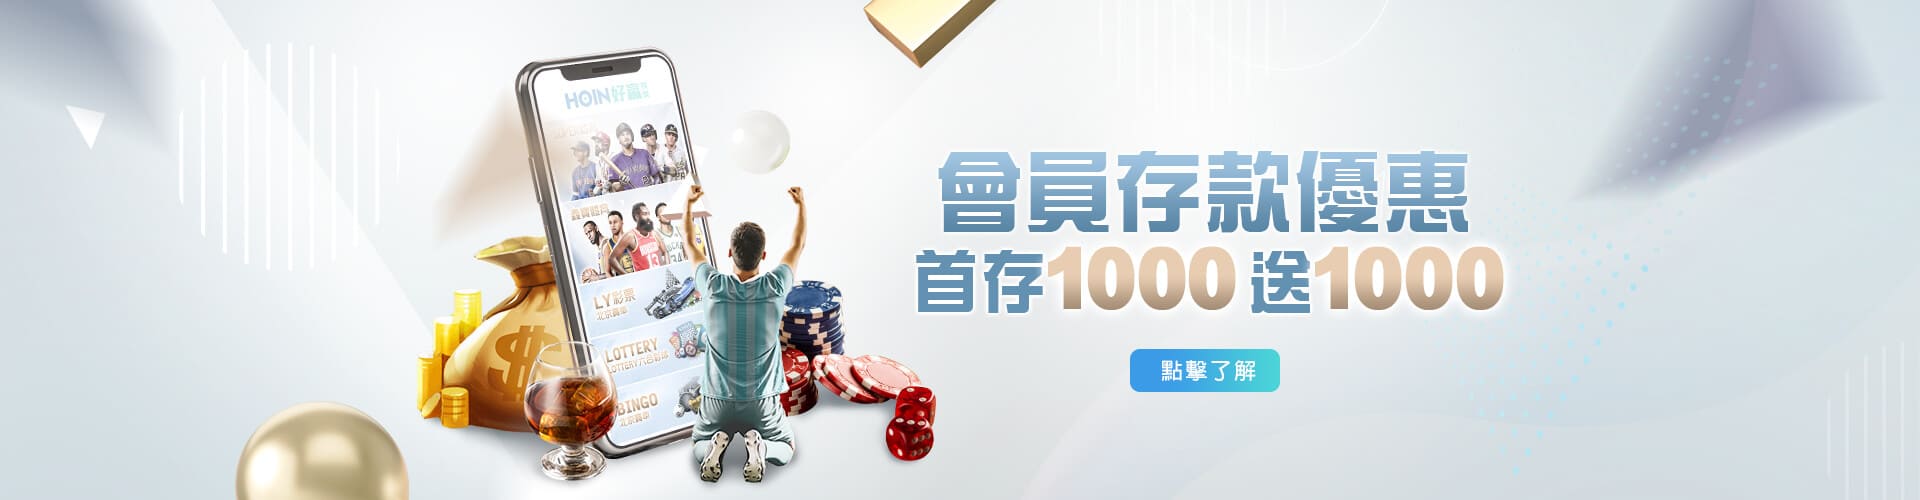 幸運拉霸GO娛樂城存款1000送1000優惠